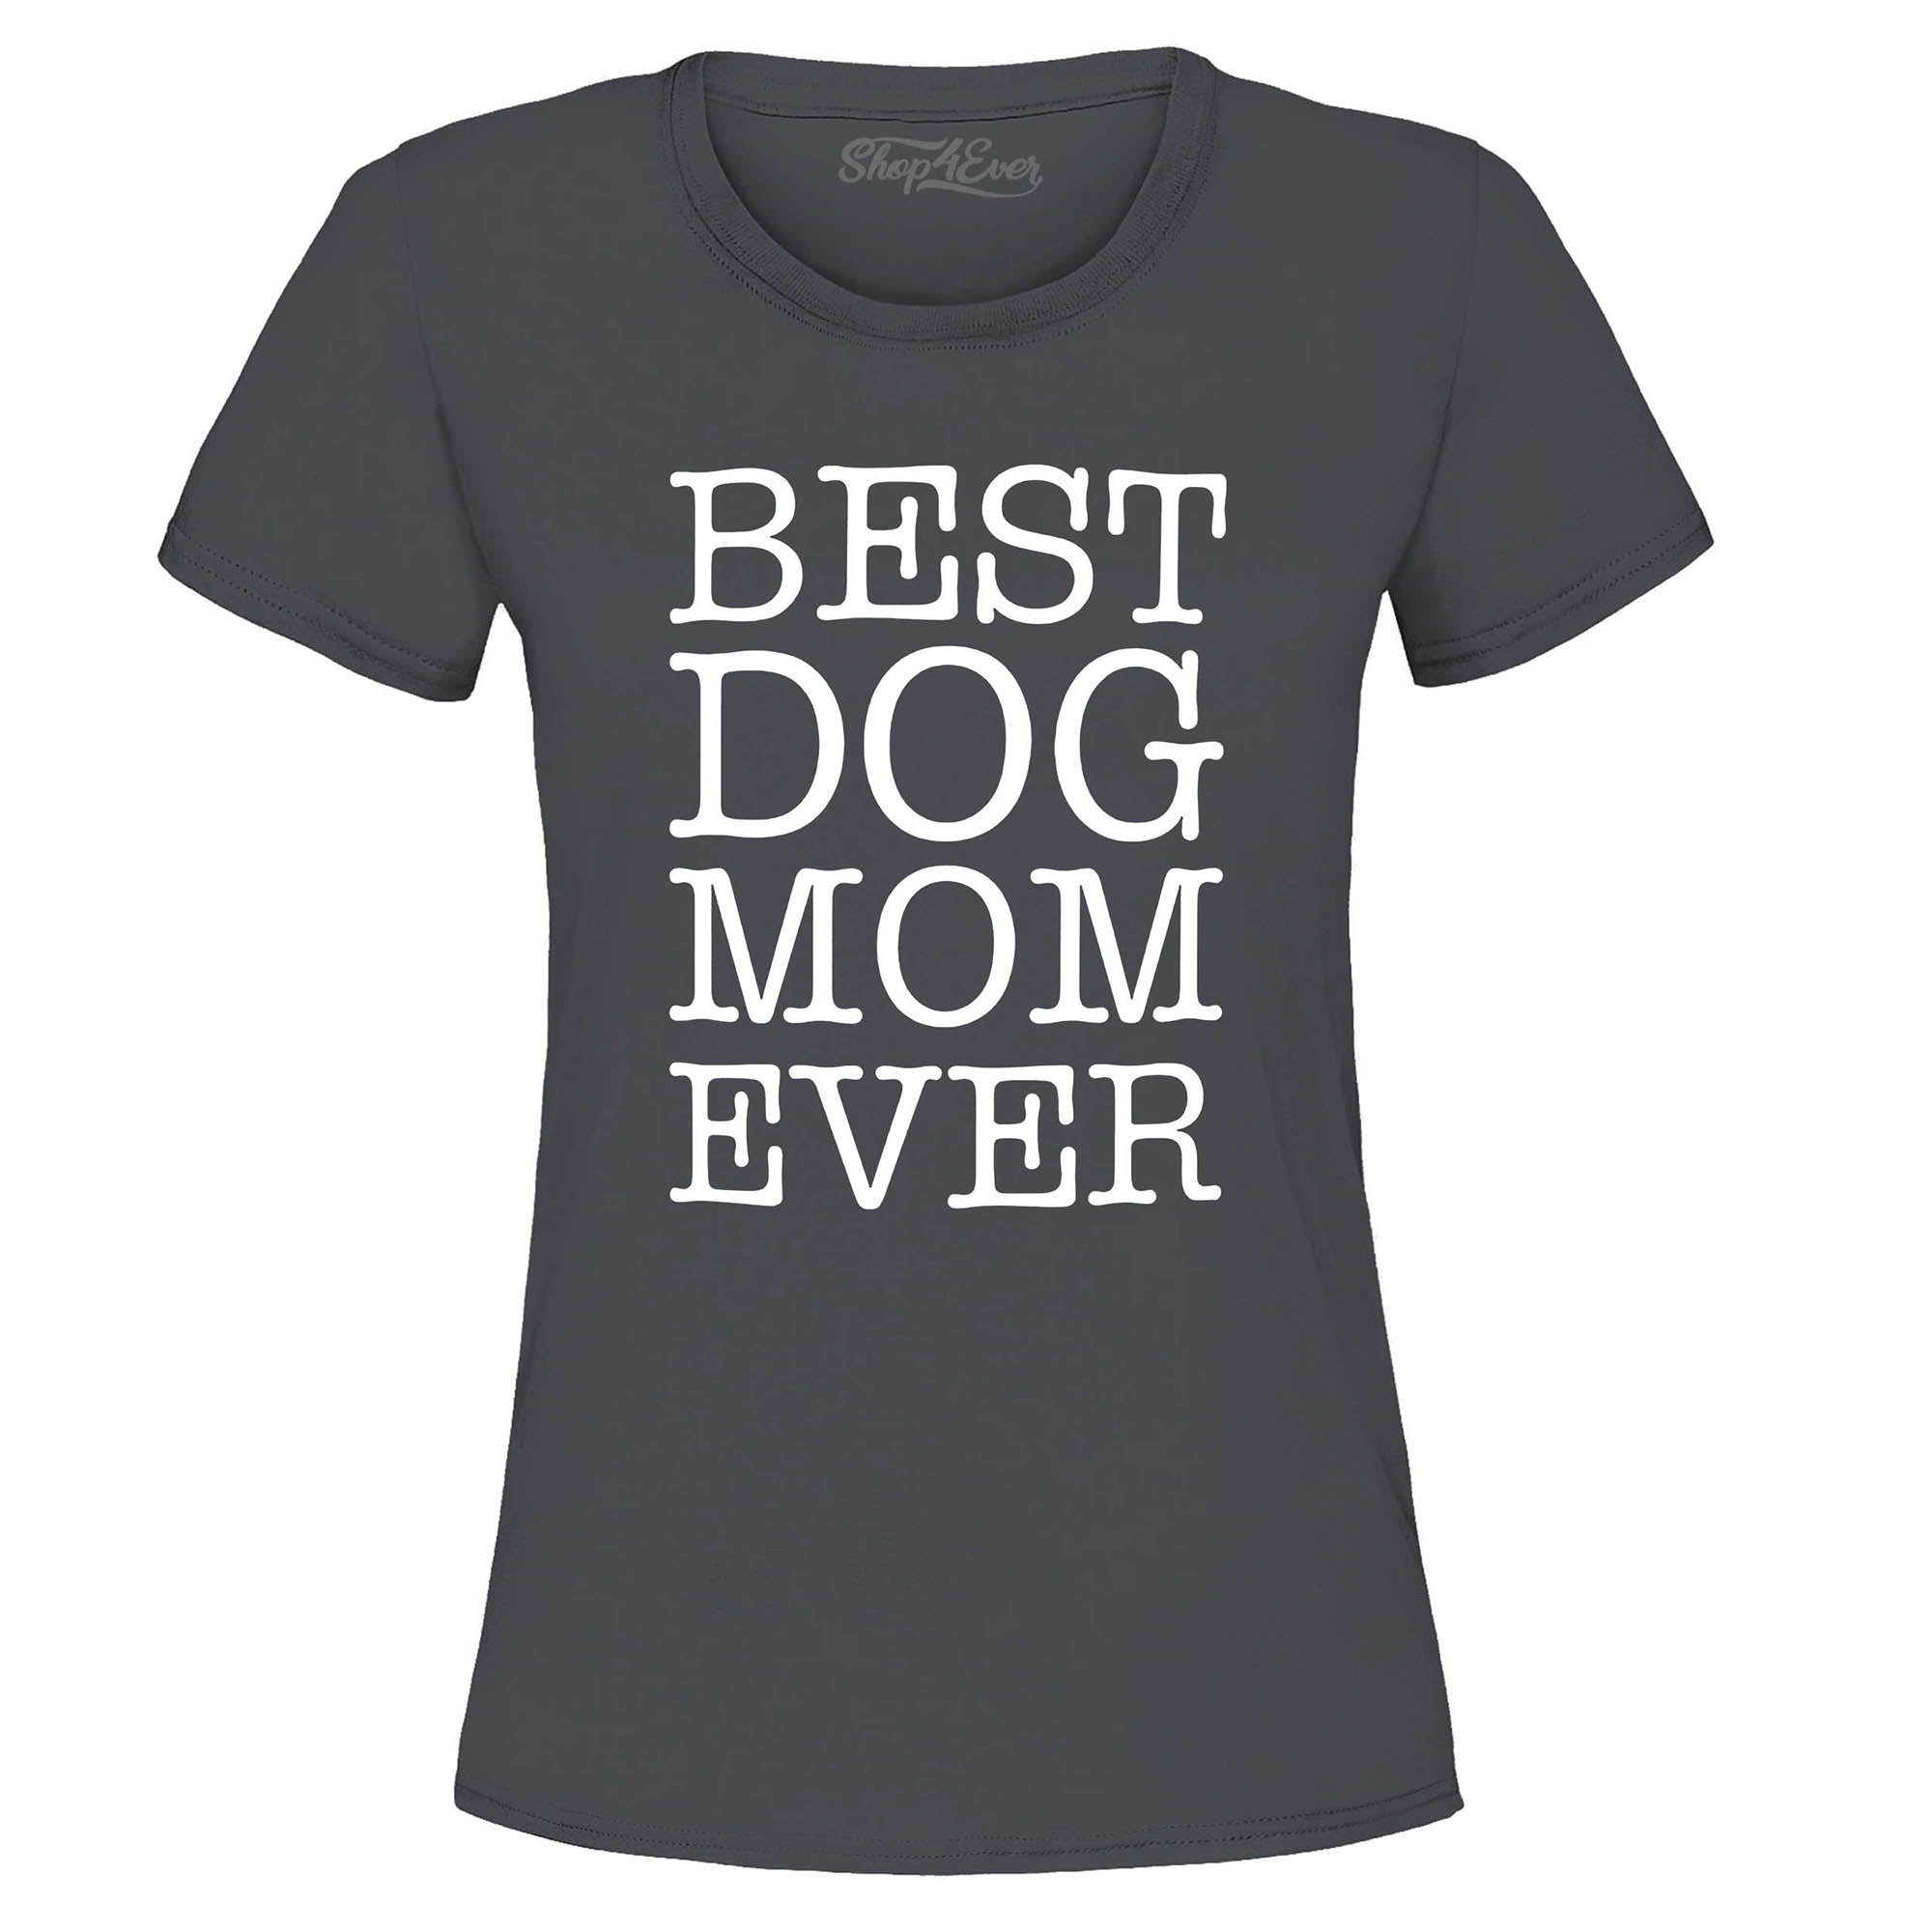 Best Dog Mom Ever Women's T-Shirt